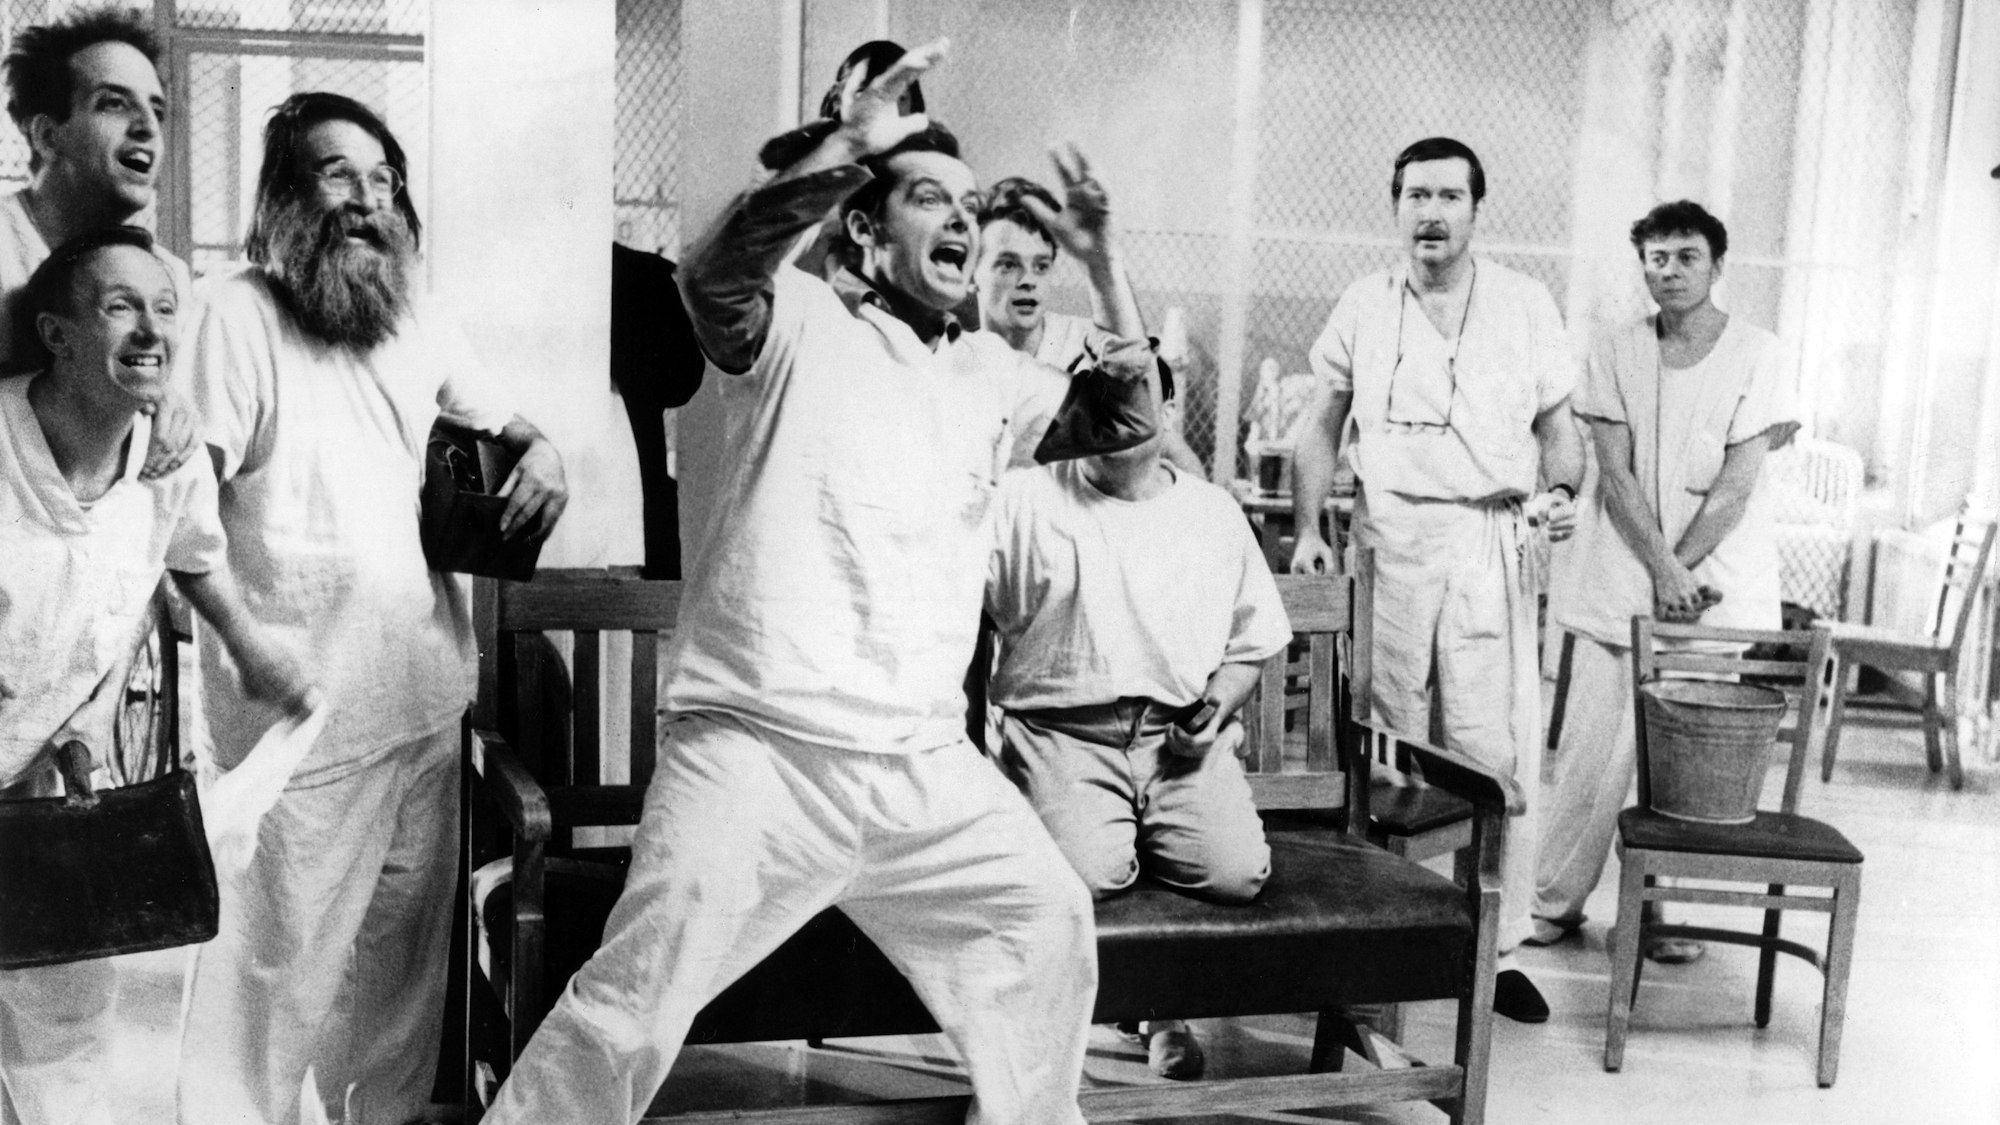 Der US-amerikanische Schauspieler Jack Nicholson (Mitte) in einer Szene von „Einer flog über das Kuckucksnest“ aus dem Jahr 1979. Die Schauspielerin Louise Fletcher wurde mit dem Psychatrie-Drama weltberühmt, jetzt ist sie im Alter von 88 Jahren gestorben.